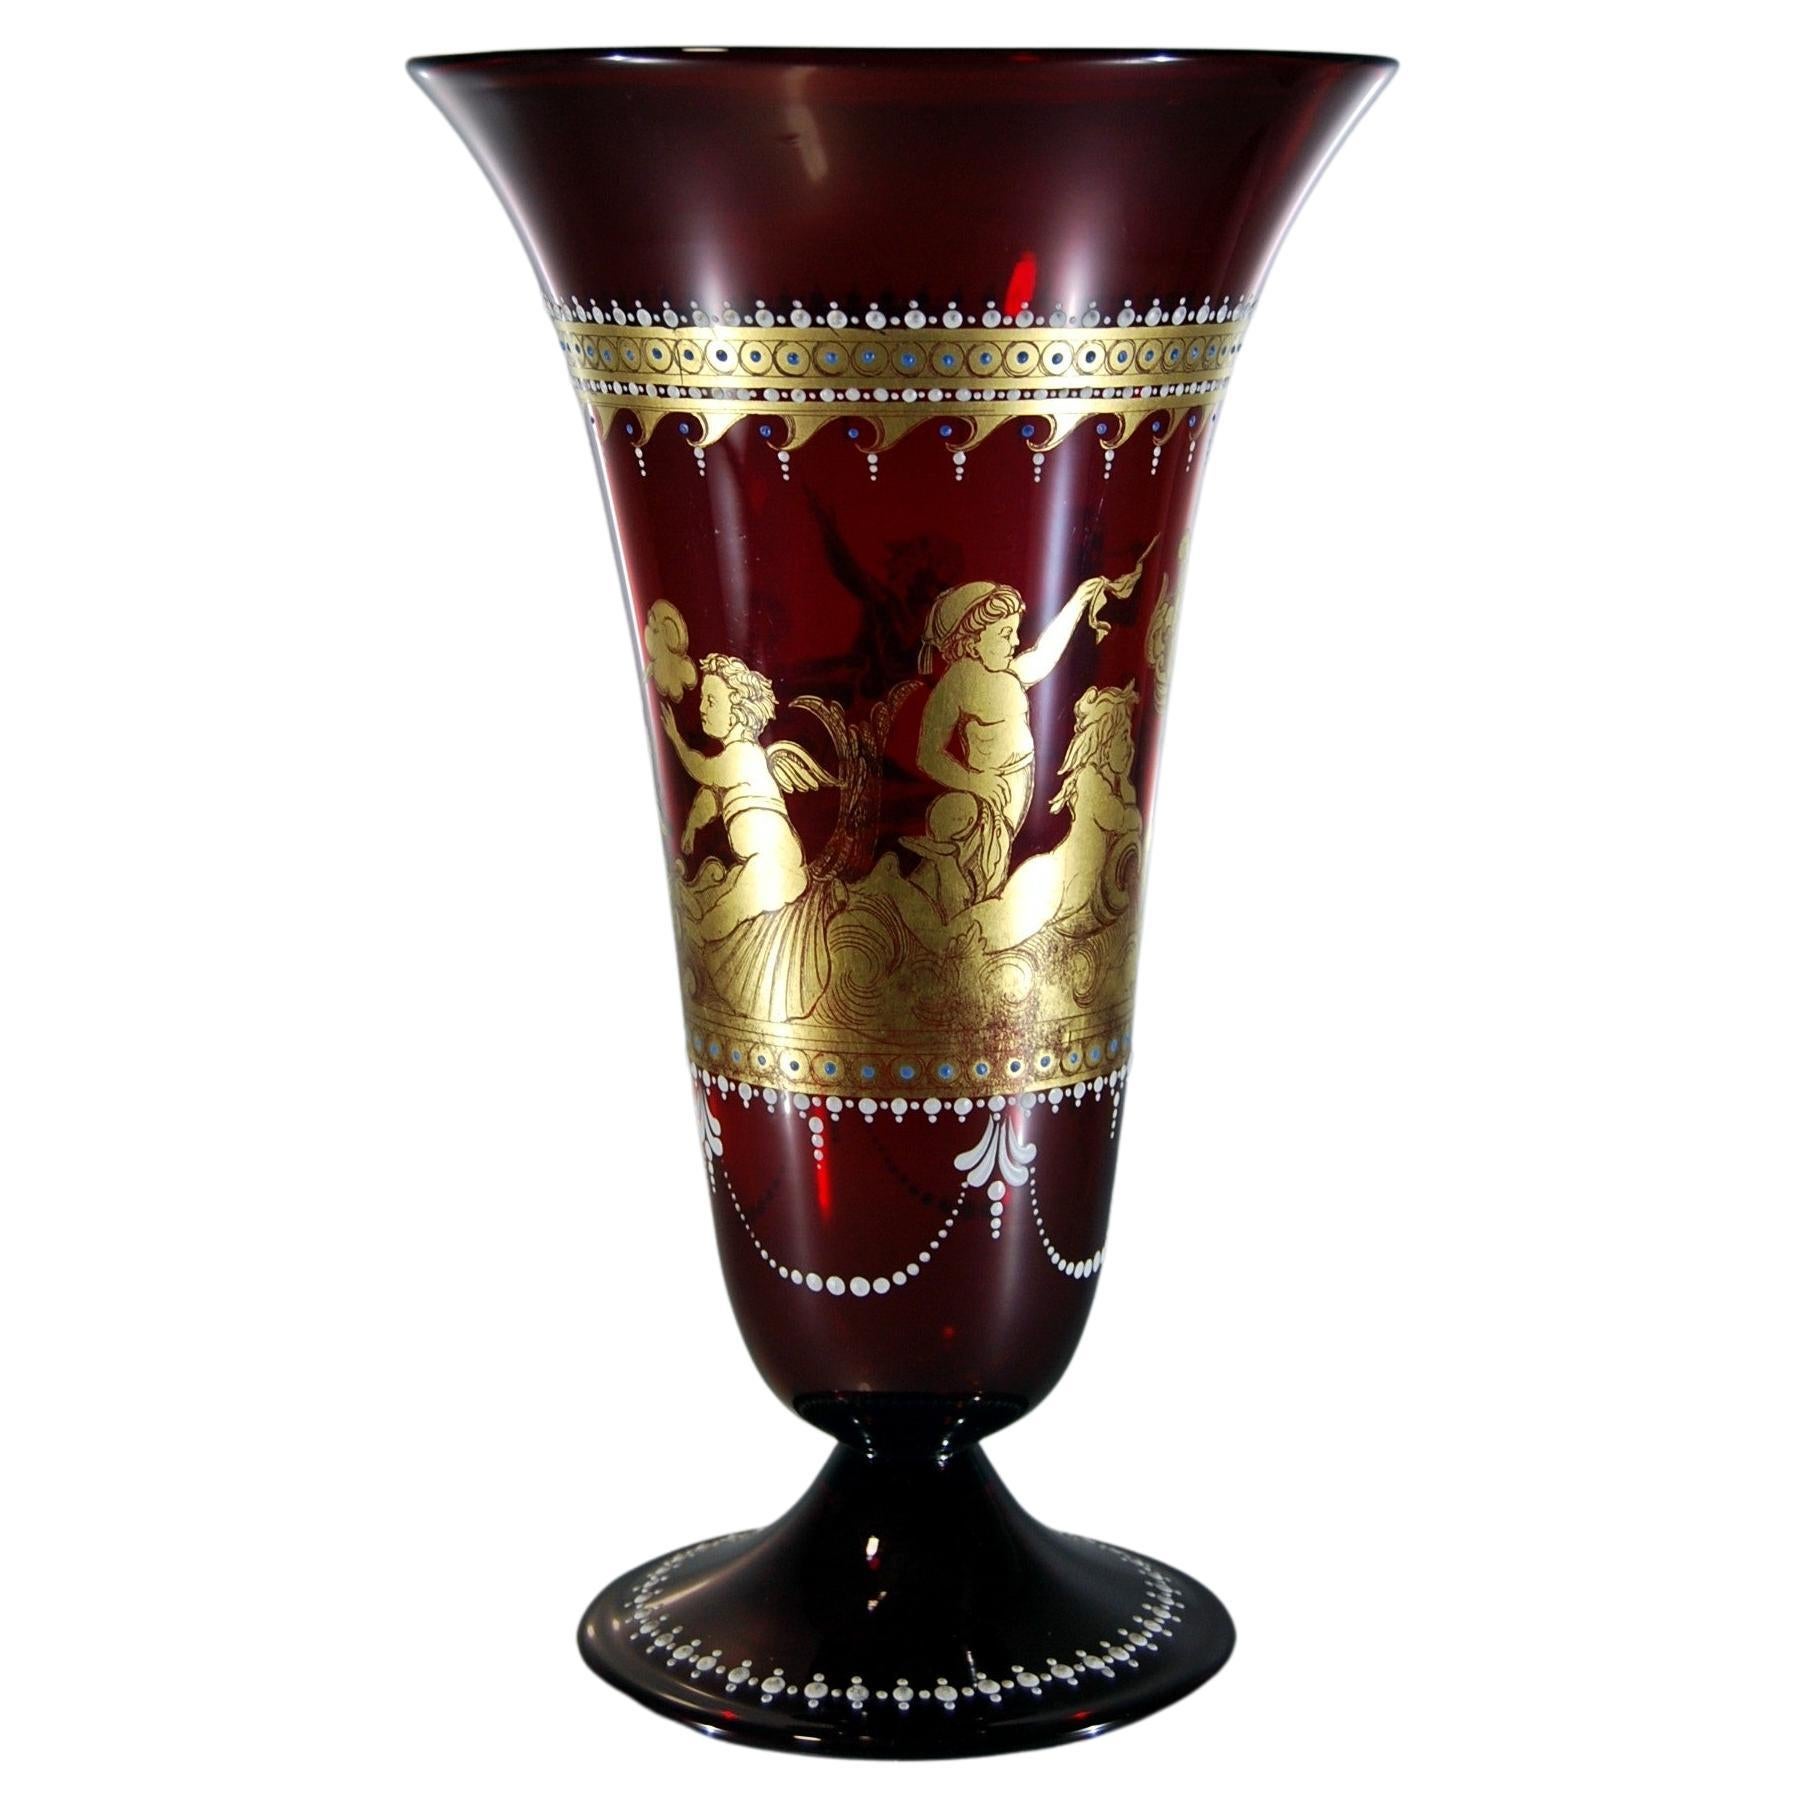 Vase en verre vénitien avec décoration dorée ancienne gravée de putti